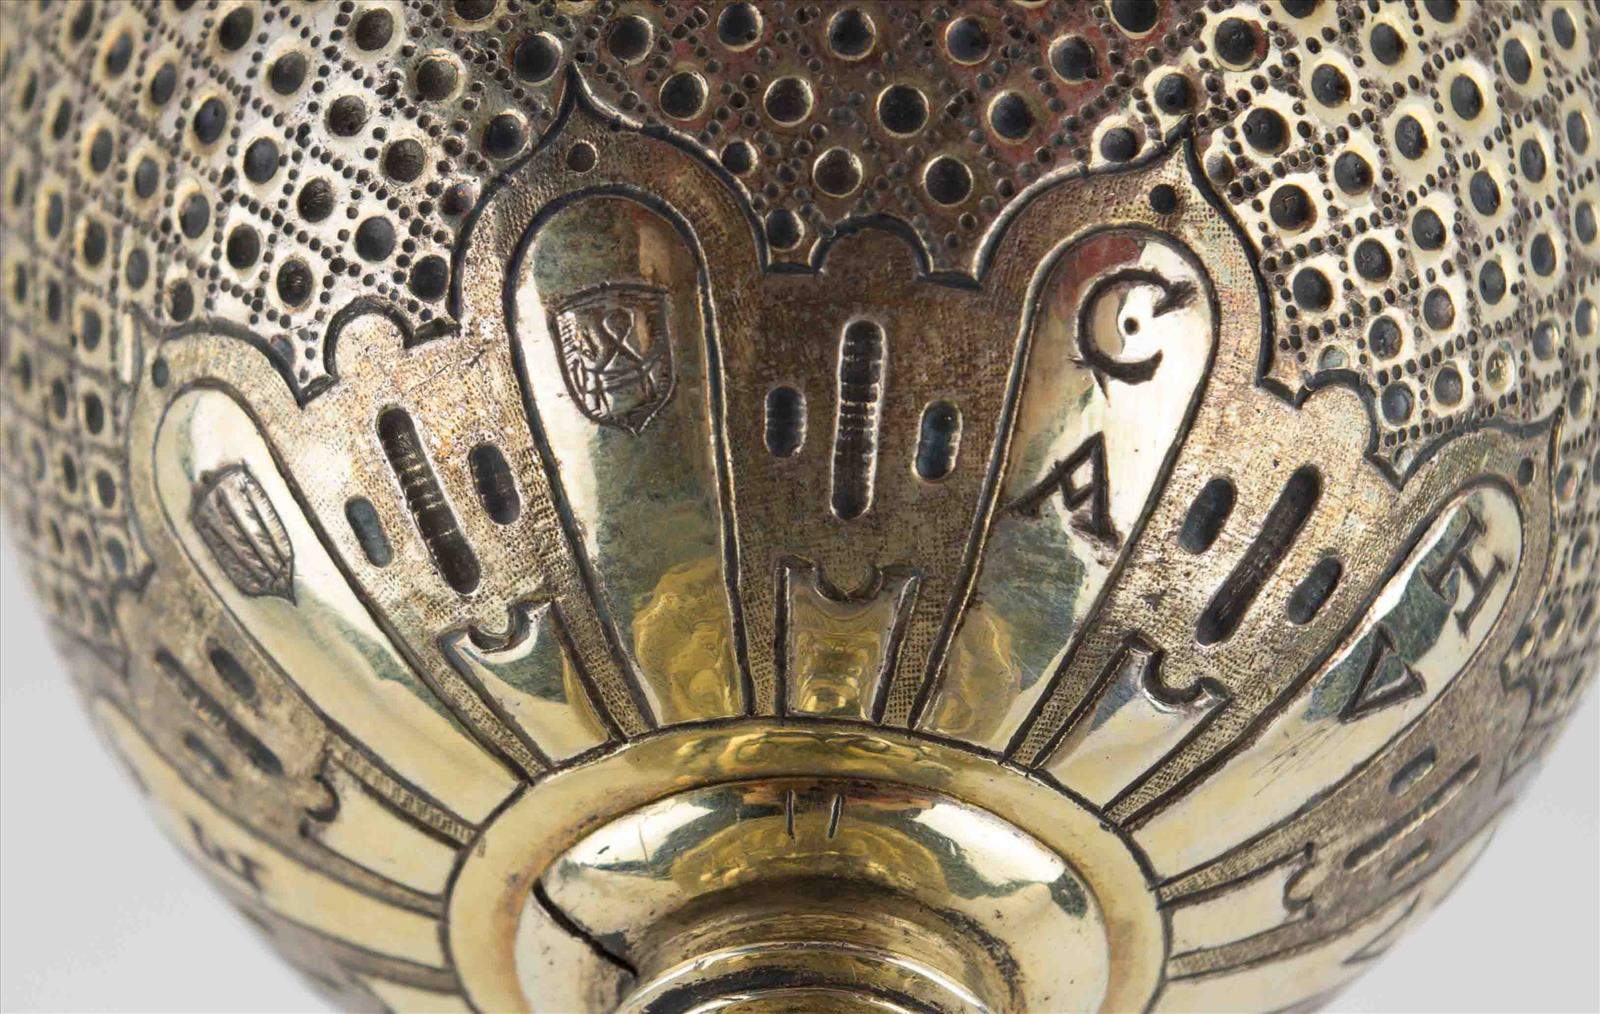 Abendmahlkelch  17. Jhd. / Holy Communion goblet, 17th centurySilber/vergoldet, geprüft, datiert - Image 4 of 5